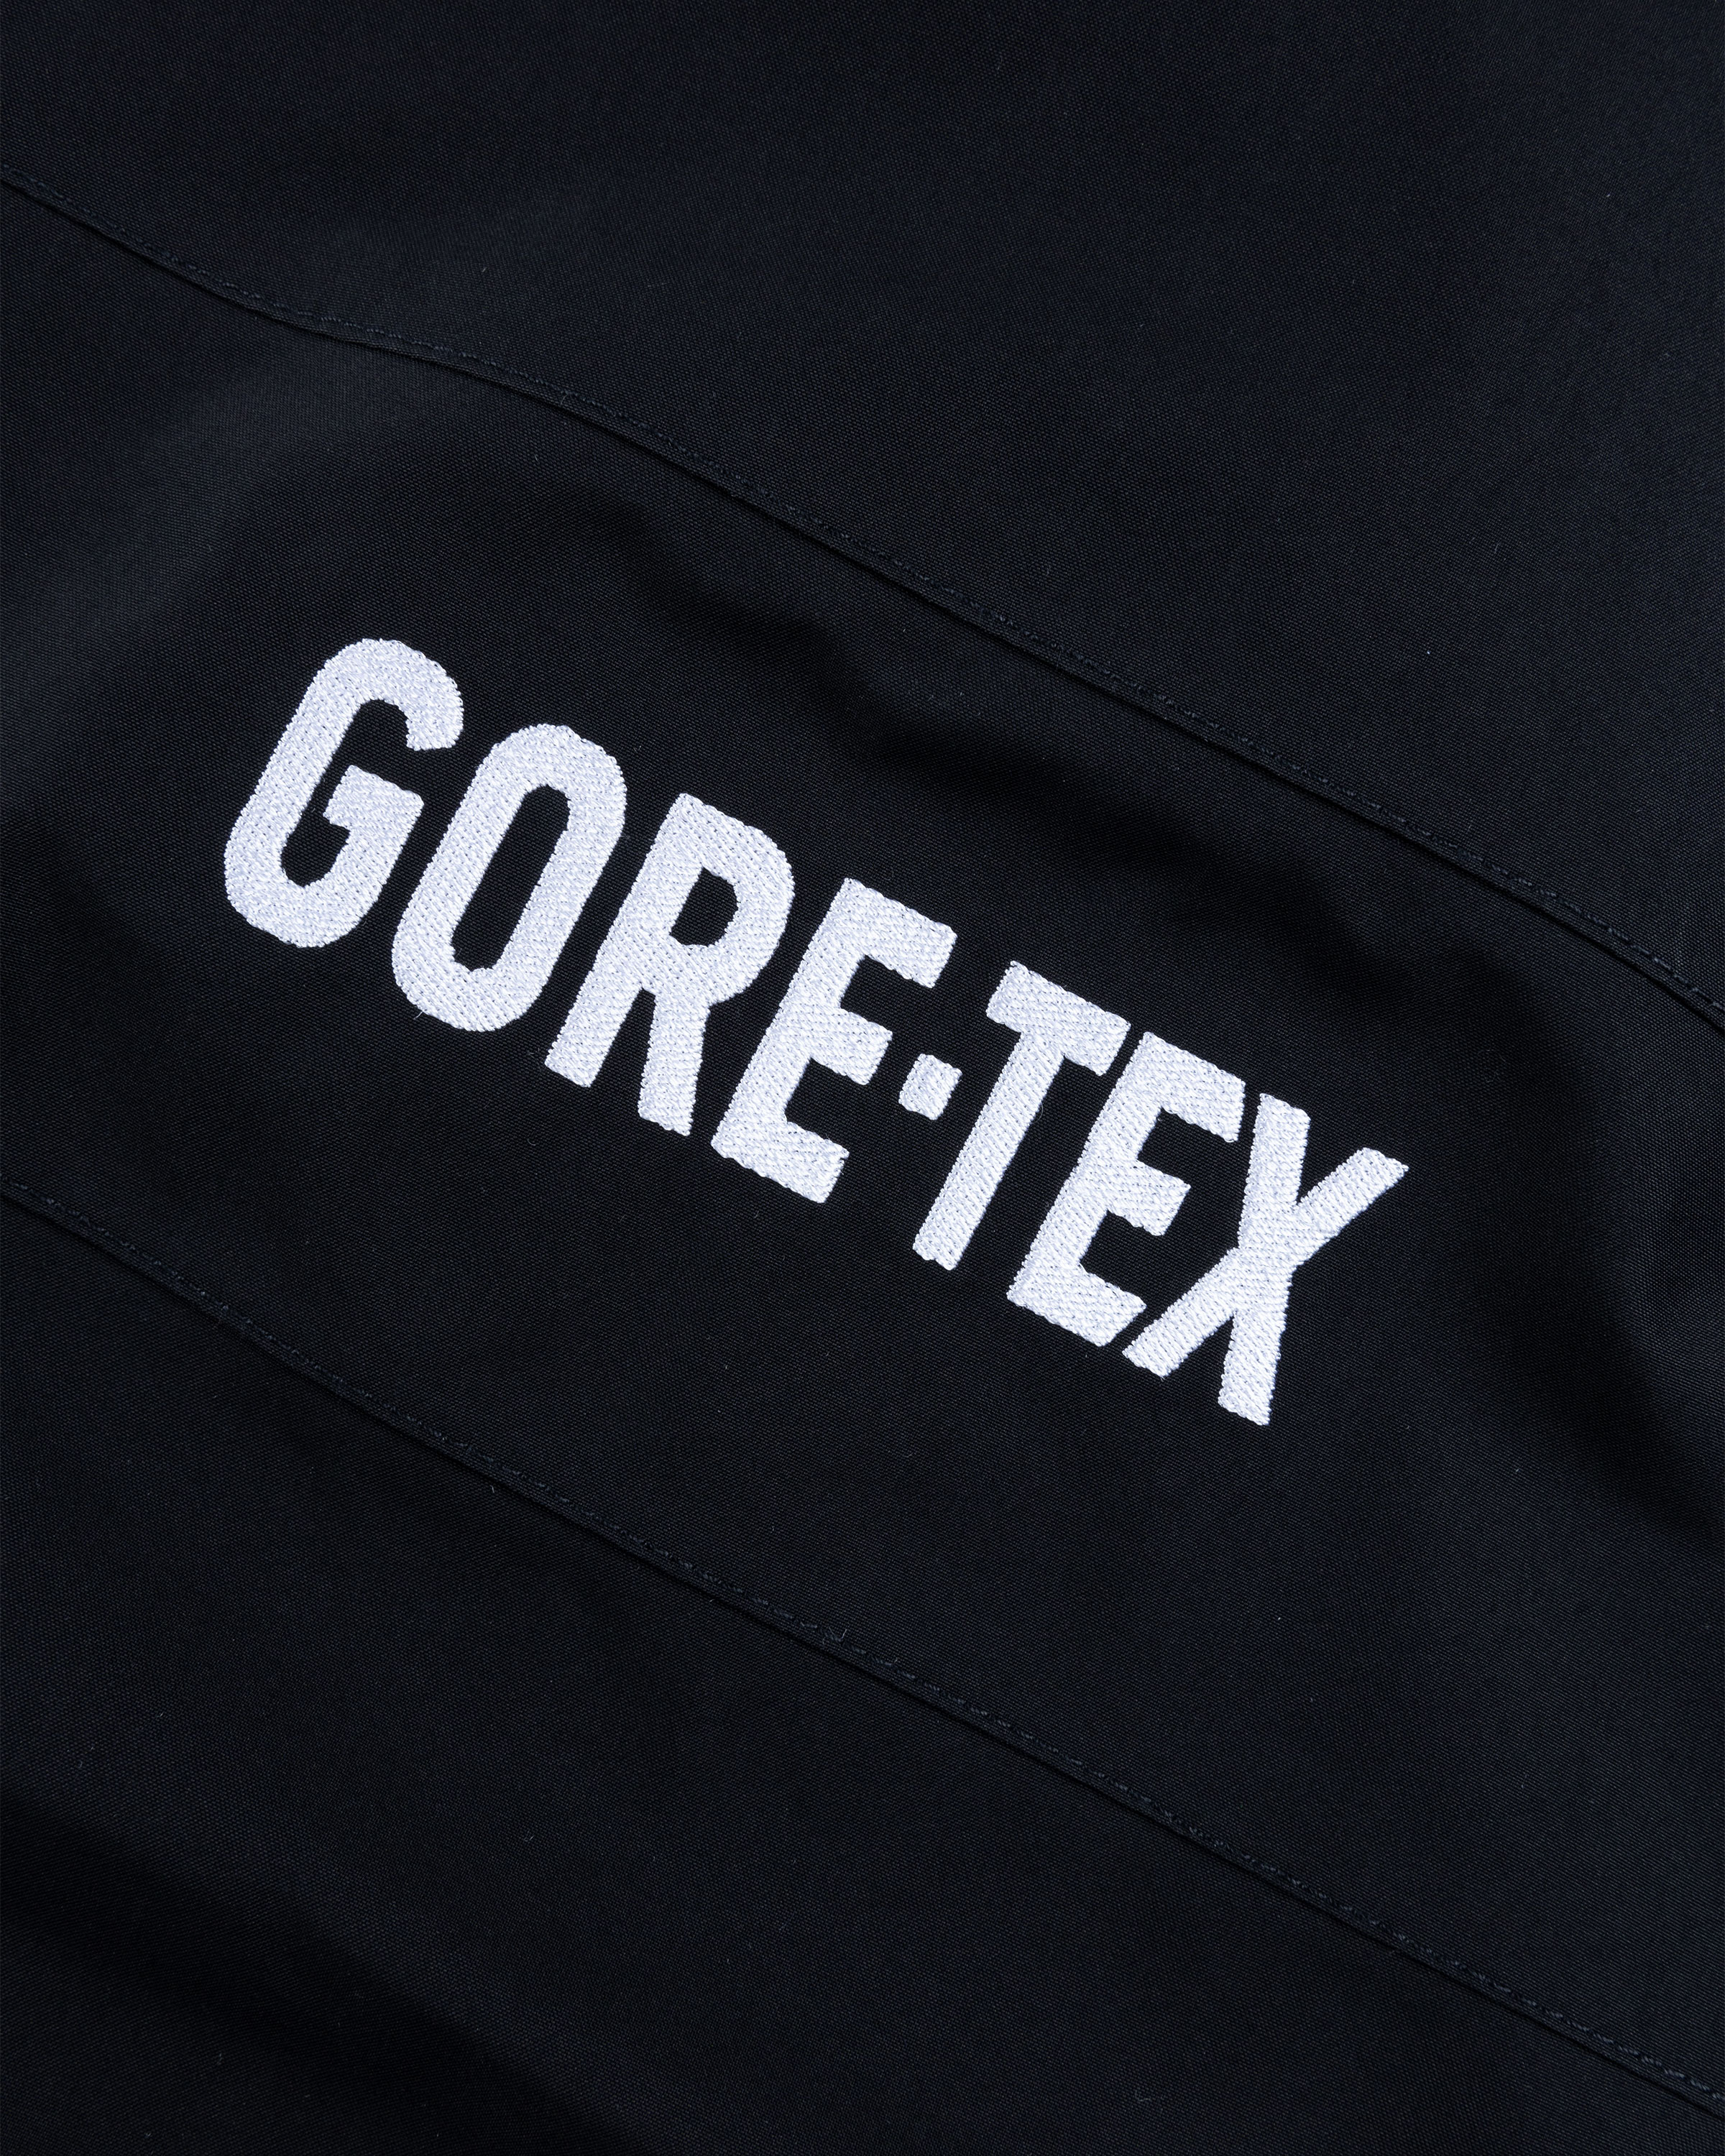 goretex fabric